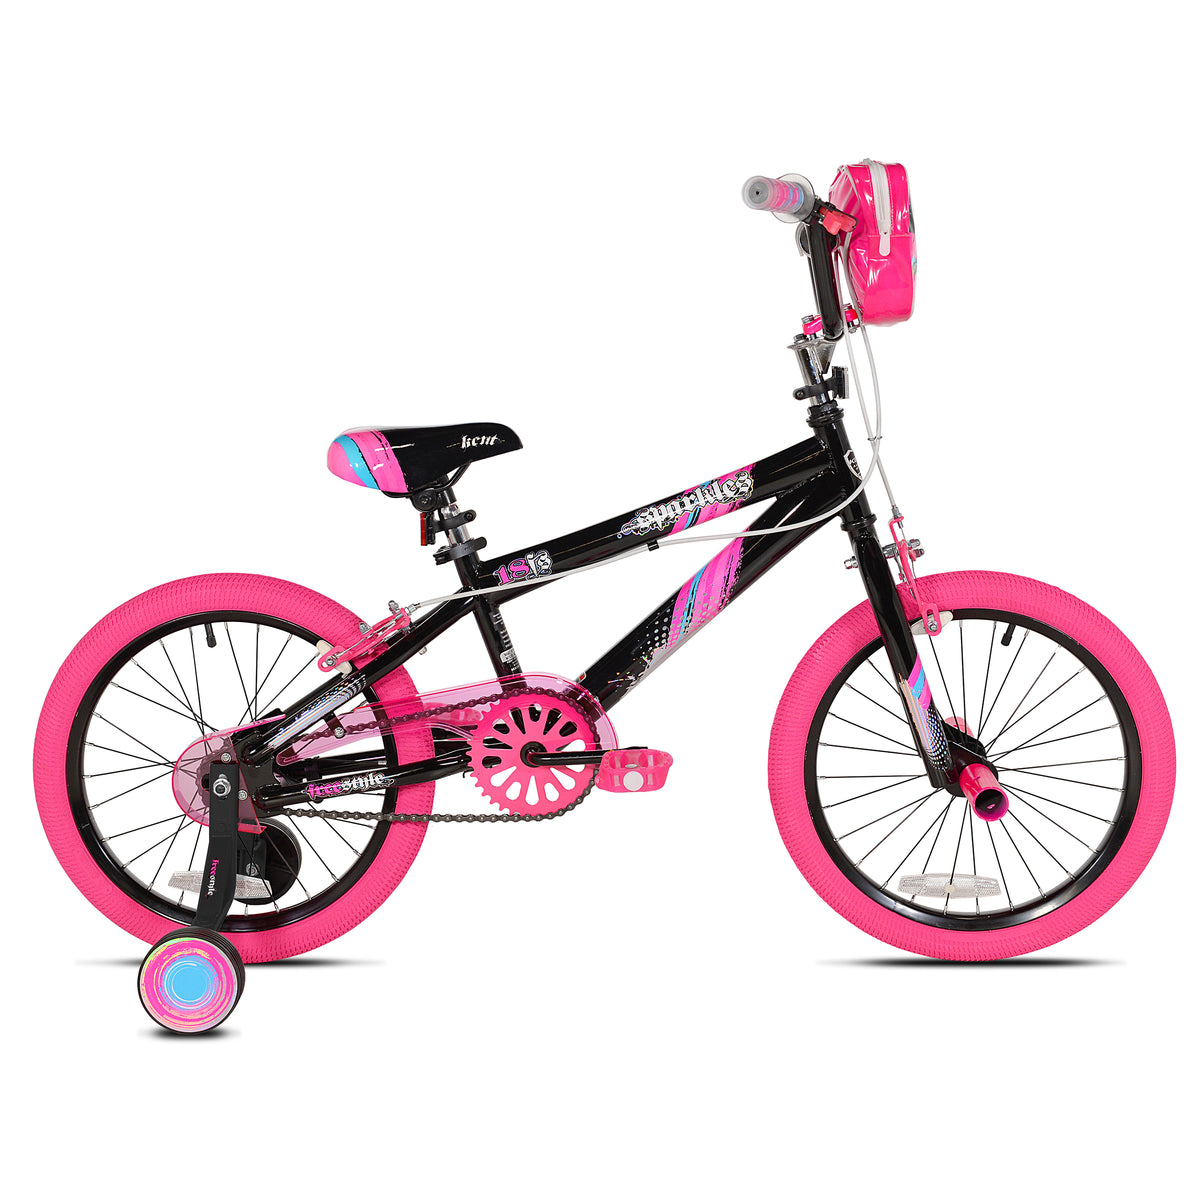 18" Kent Sparkles | Bike for Kids Ages 5-8